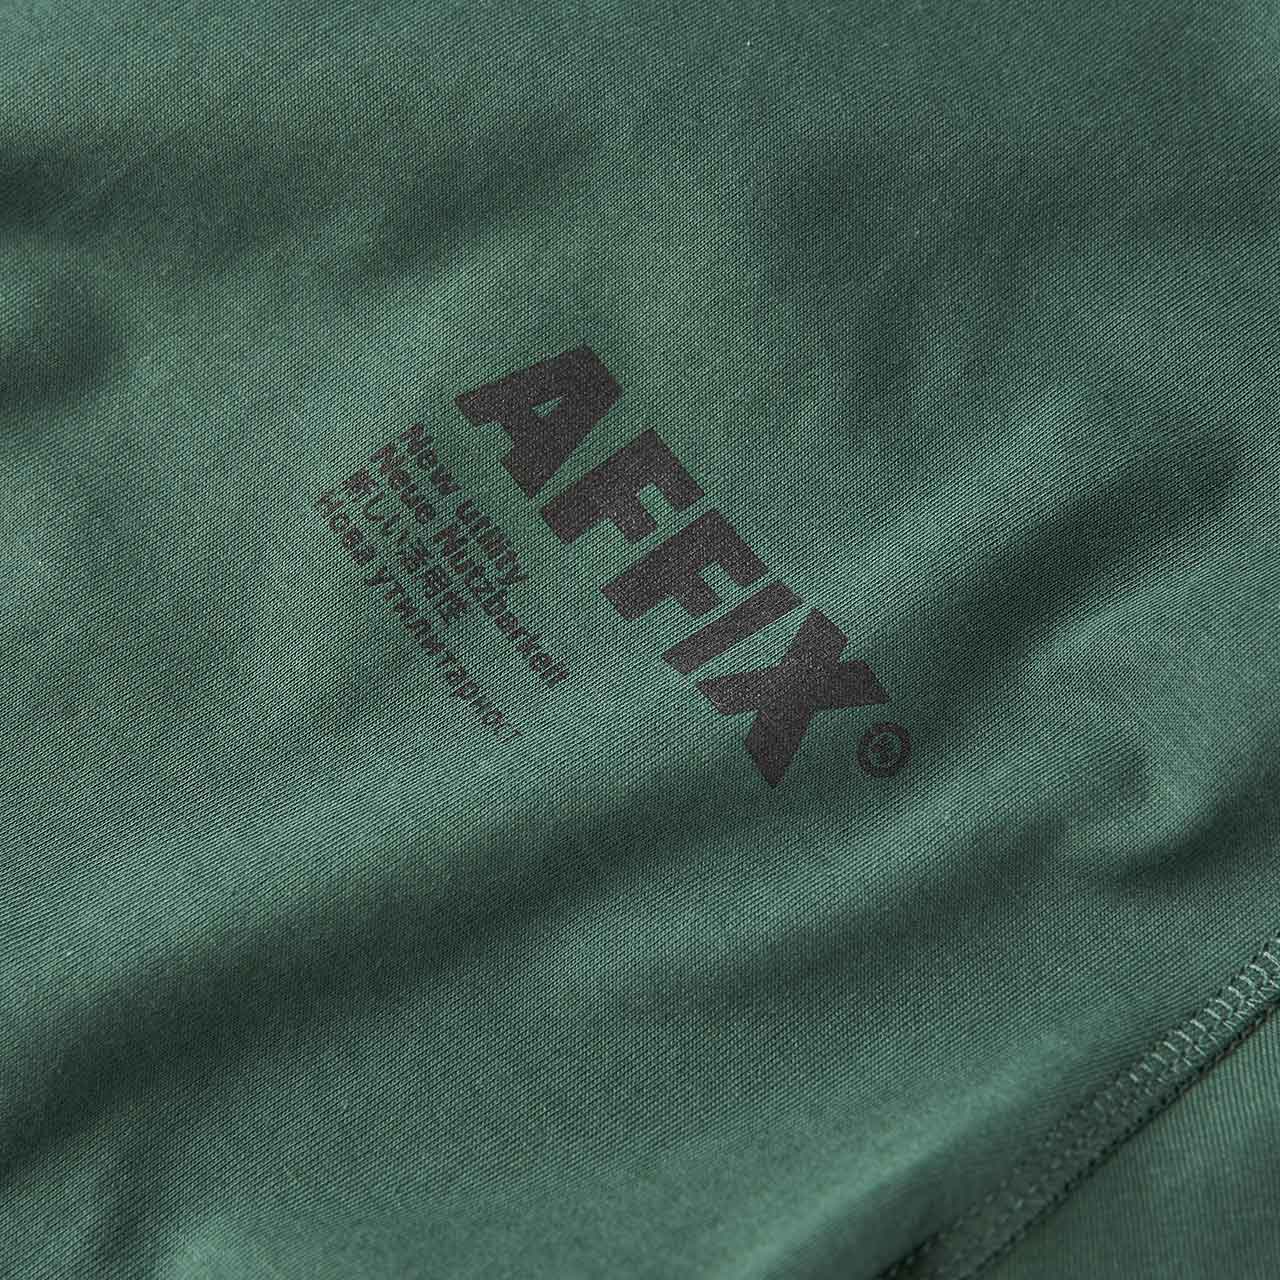 affix works affix works standardised logo t-shirt (deep green)